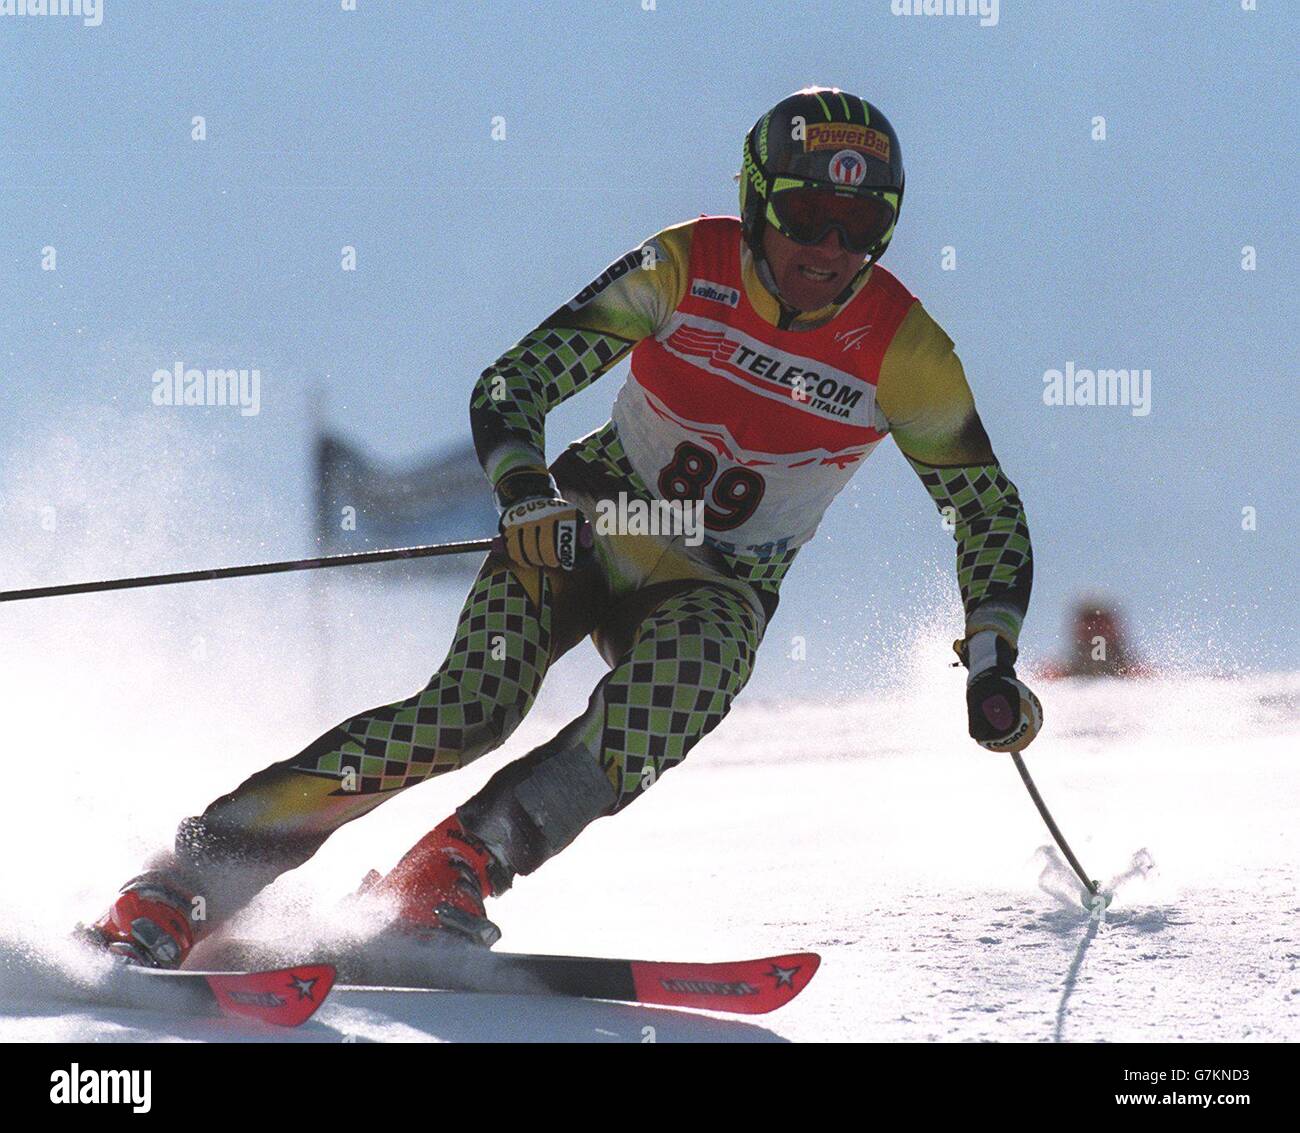 Cober Bastoni da sci alpino gara slalom GS super G DH world cup alpine ski poles 